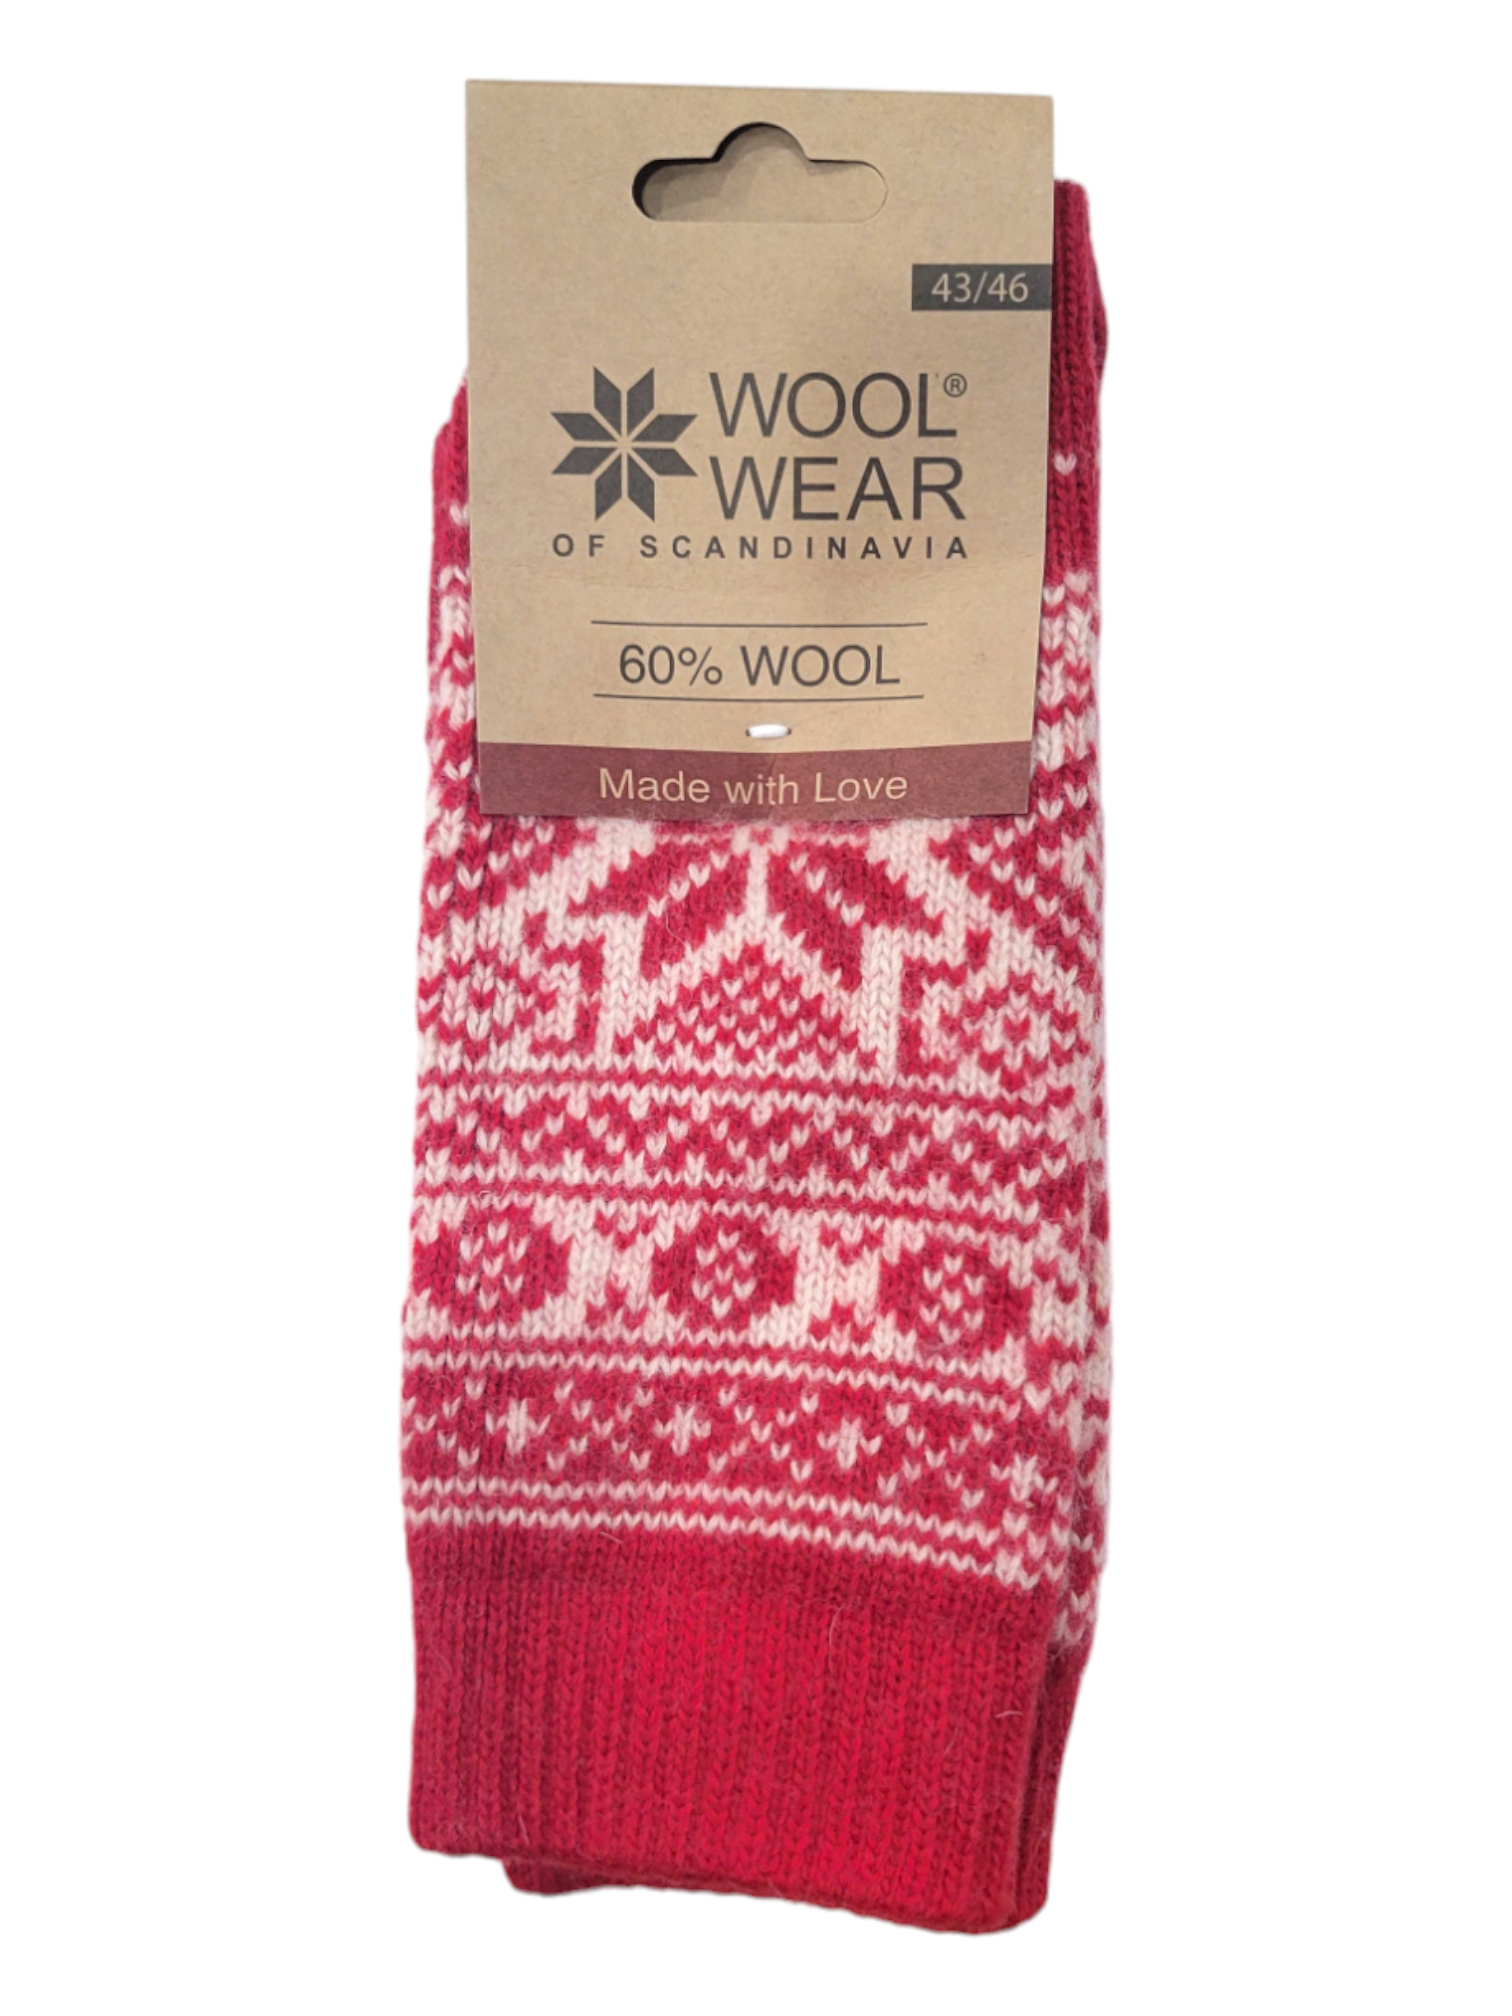 Socks: Wool Wear - Red w/ White Pattern, Selbu Star, 60% Wool